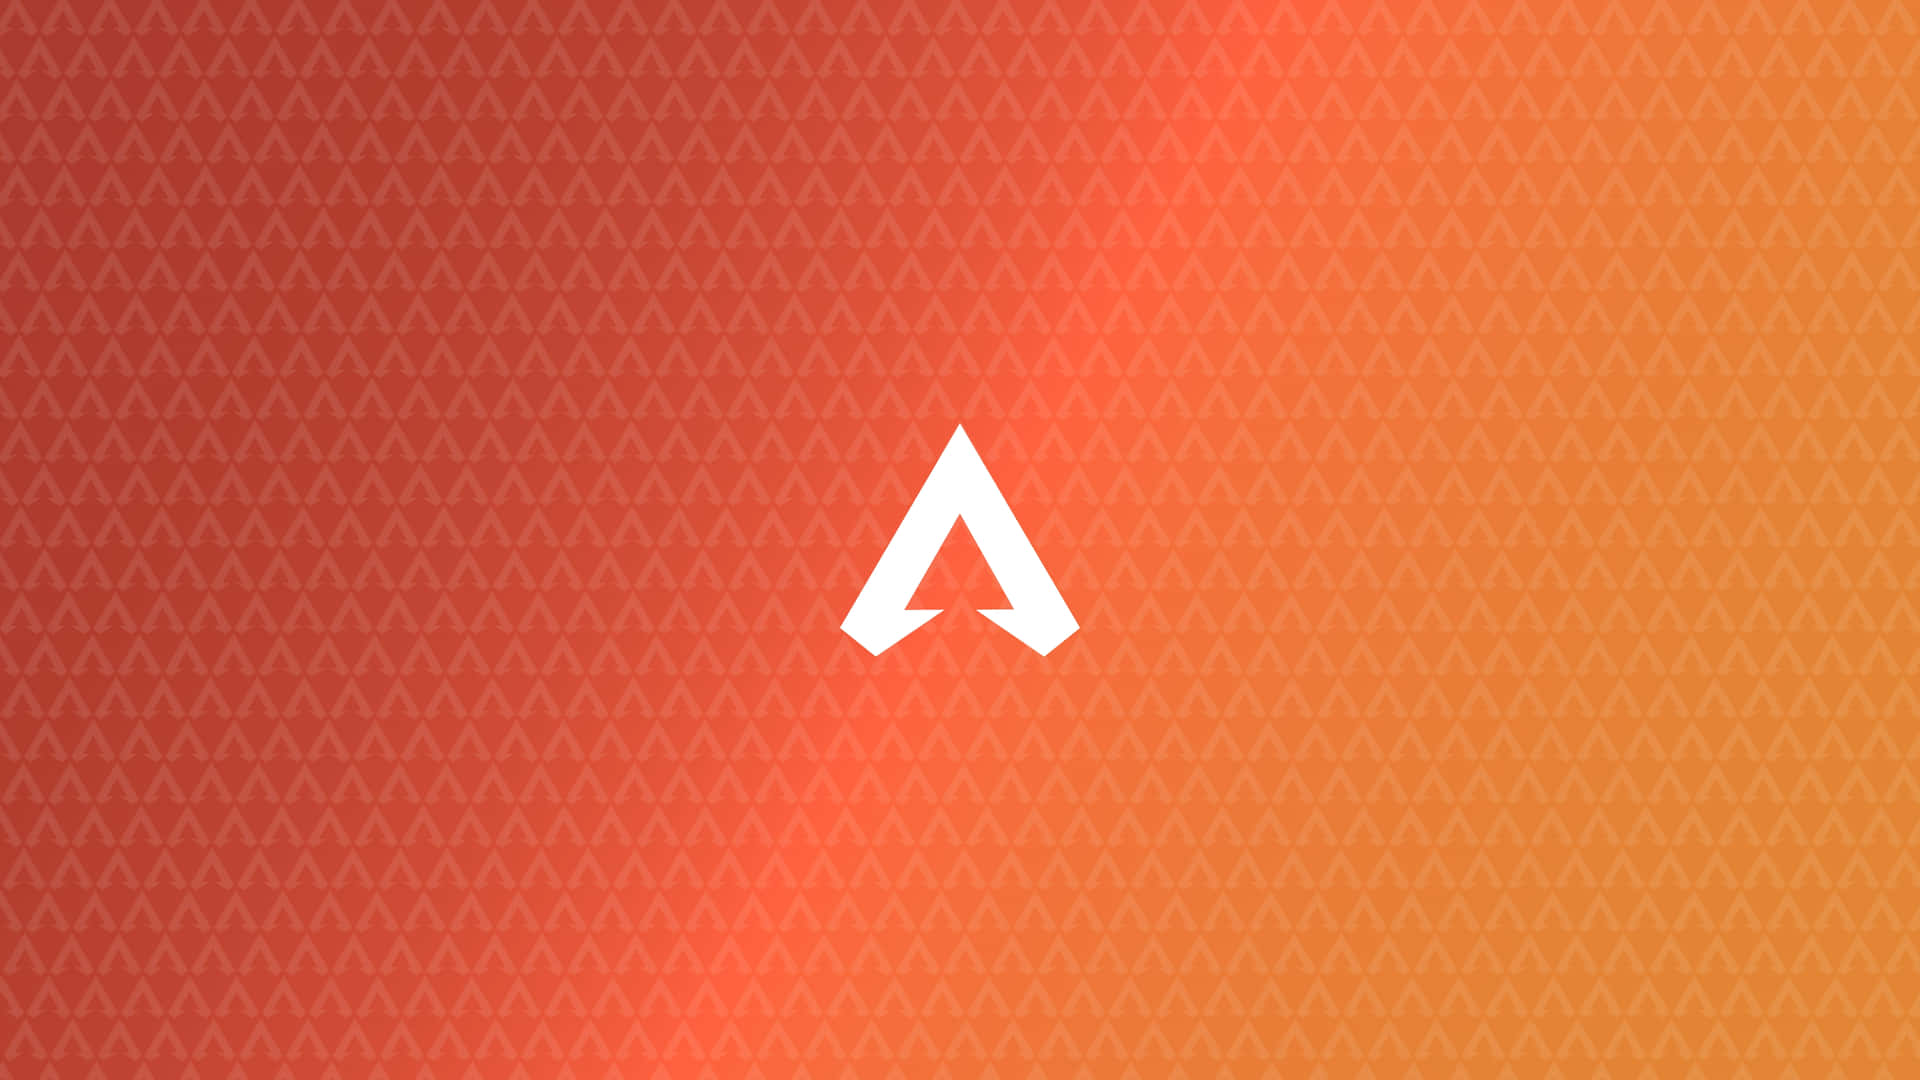 Logotipode Apex Legends Sobre Fondo Naranja Fondo de pantalla